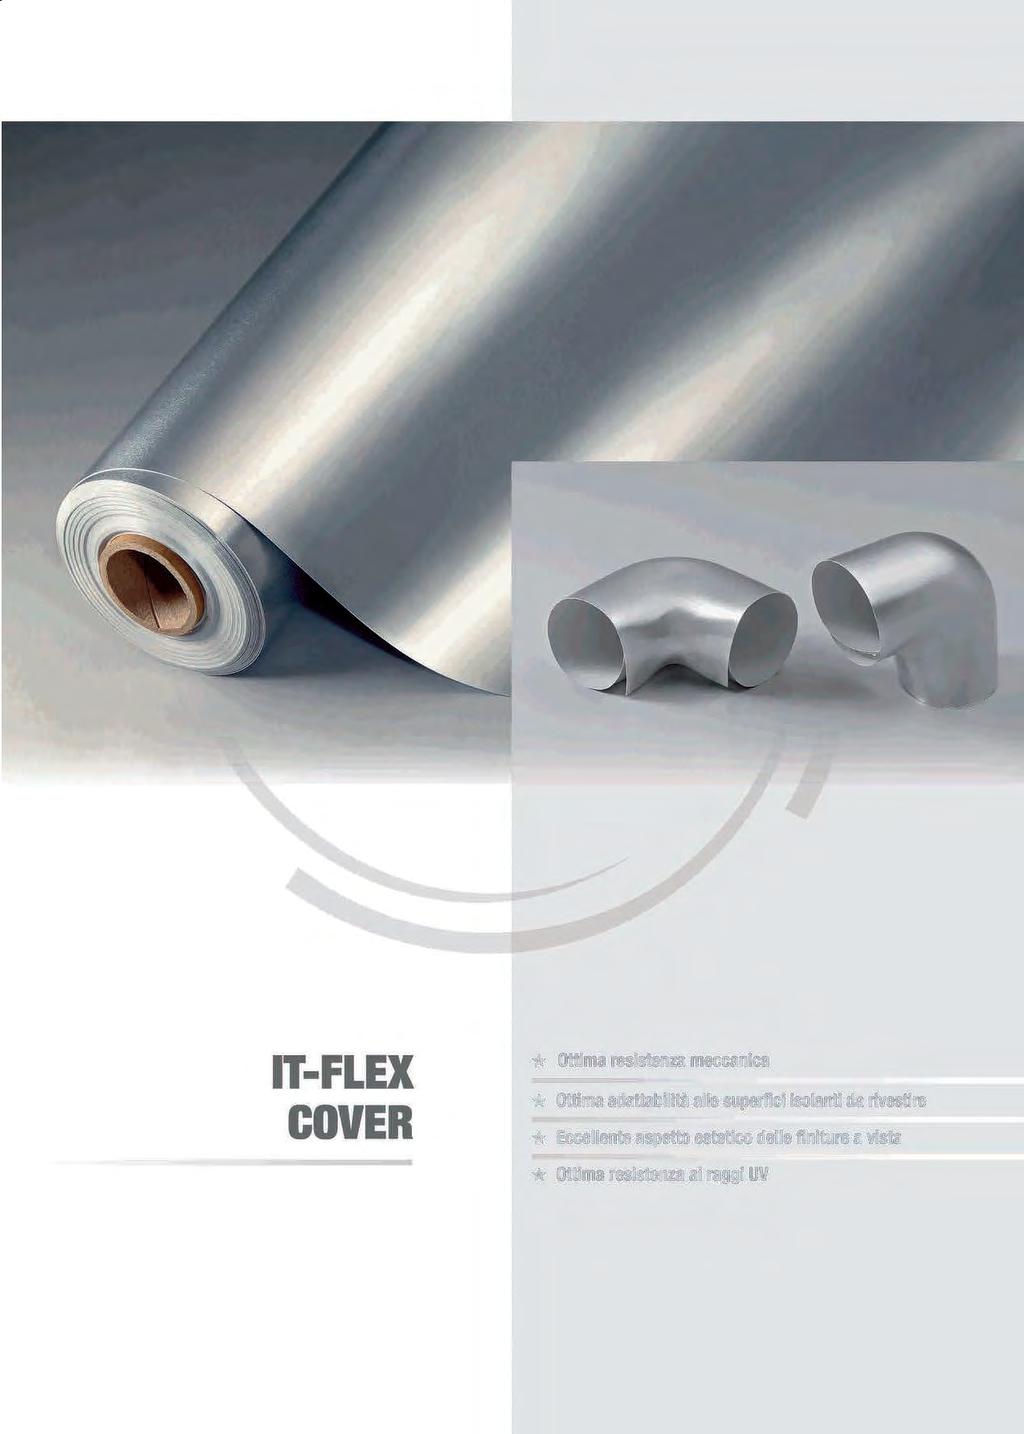 ITFLEX COVER * Ottima resistenza meccanica * Ottima adattabilità alle superfici isolanti da